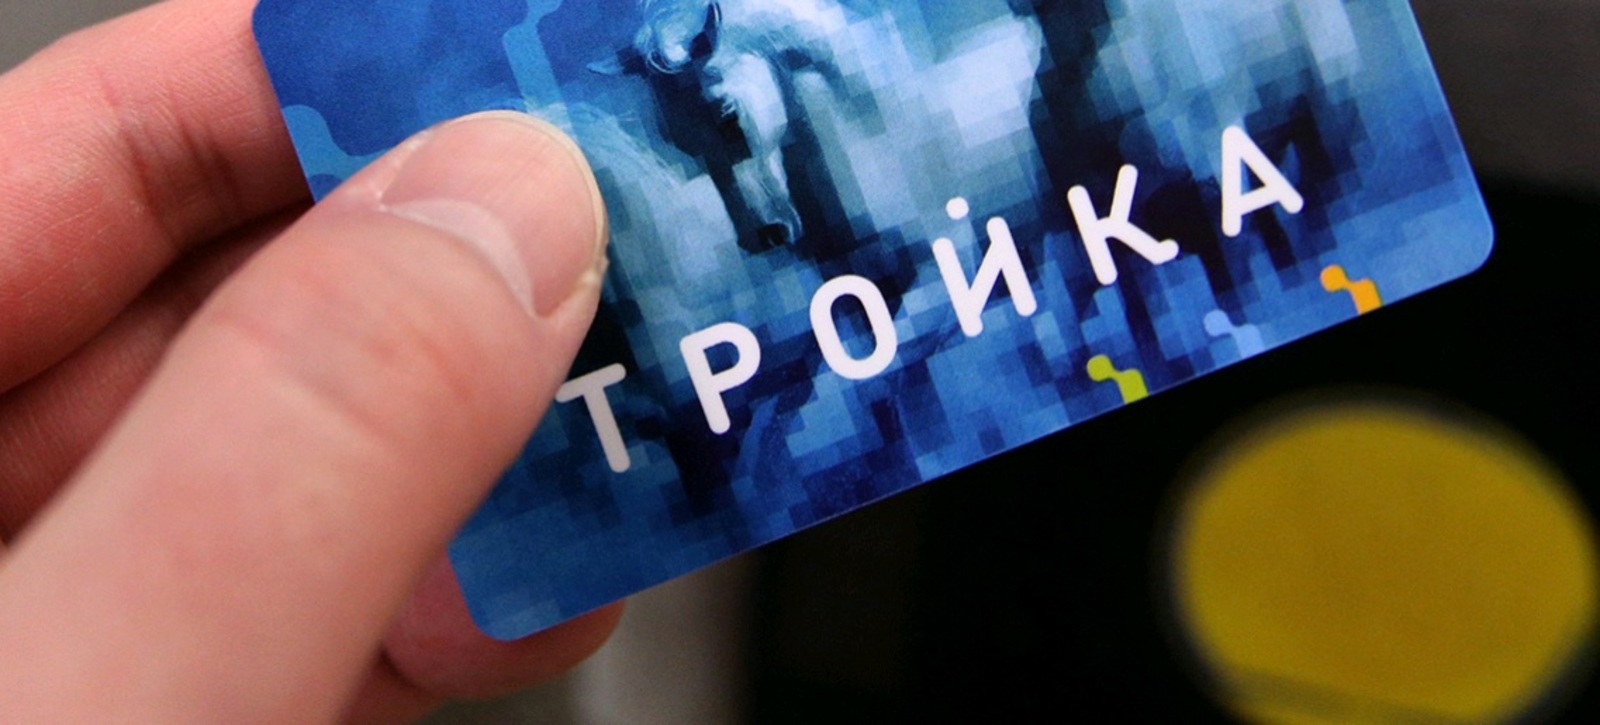 Более 50 тысяч москвичей присоединились к программе лояльности карты «Тройка». Фото: архив